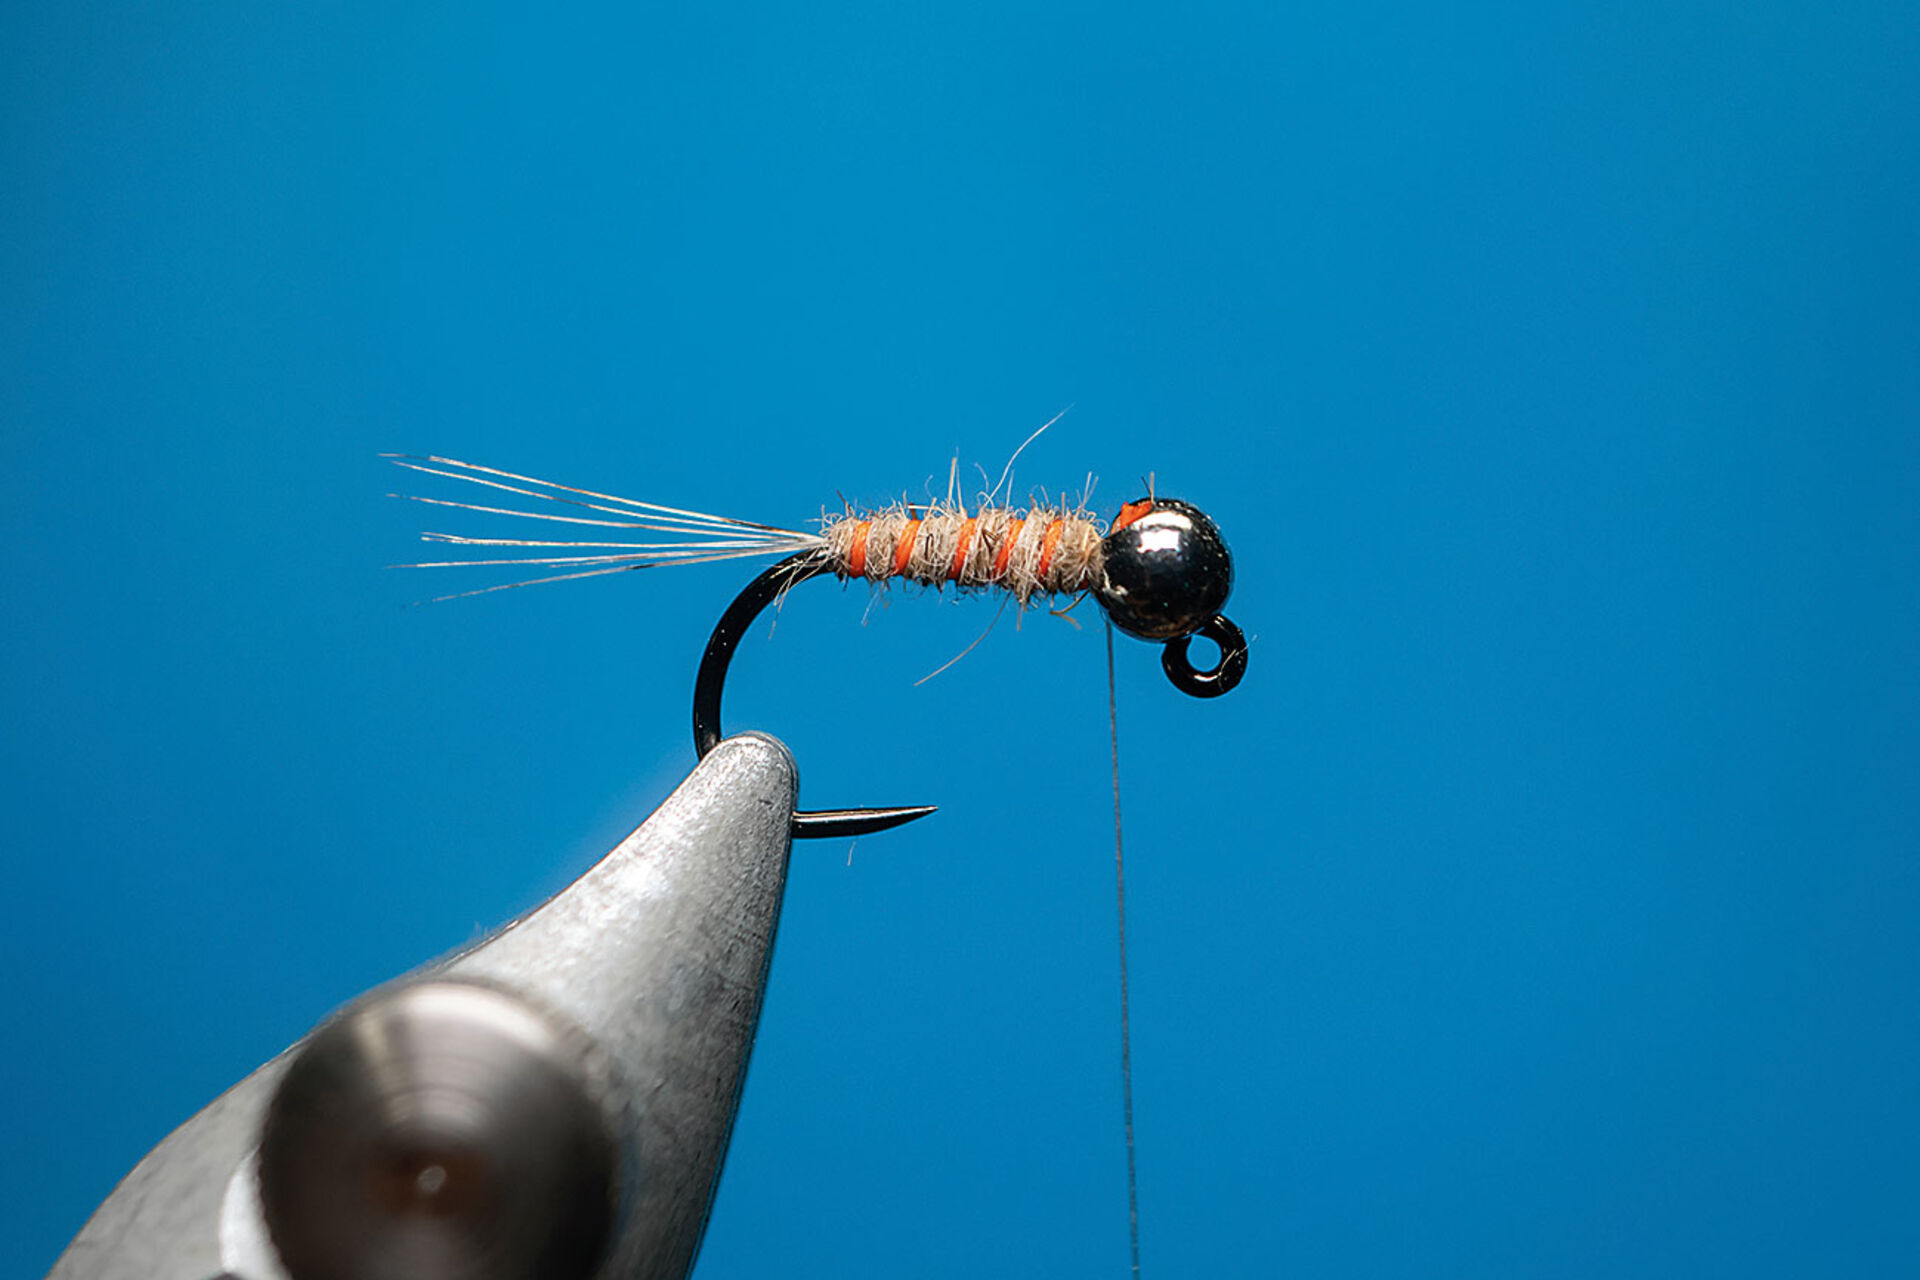  5. Rippungsmaterial in 5 bis 6 offenen Spiralwindungen auf den Körper aufwickeln. Das verleiht der Fliege die Segmentierung.  